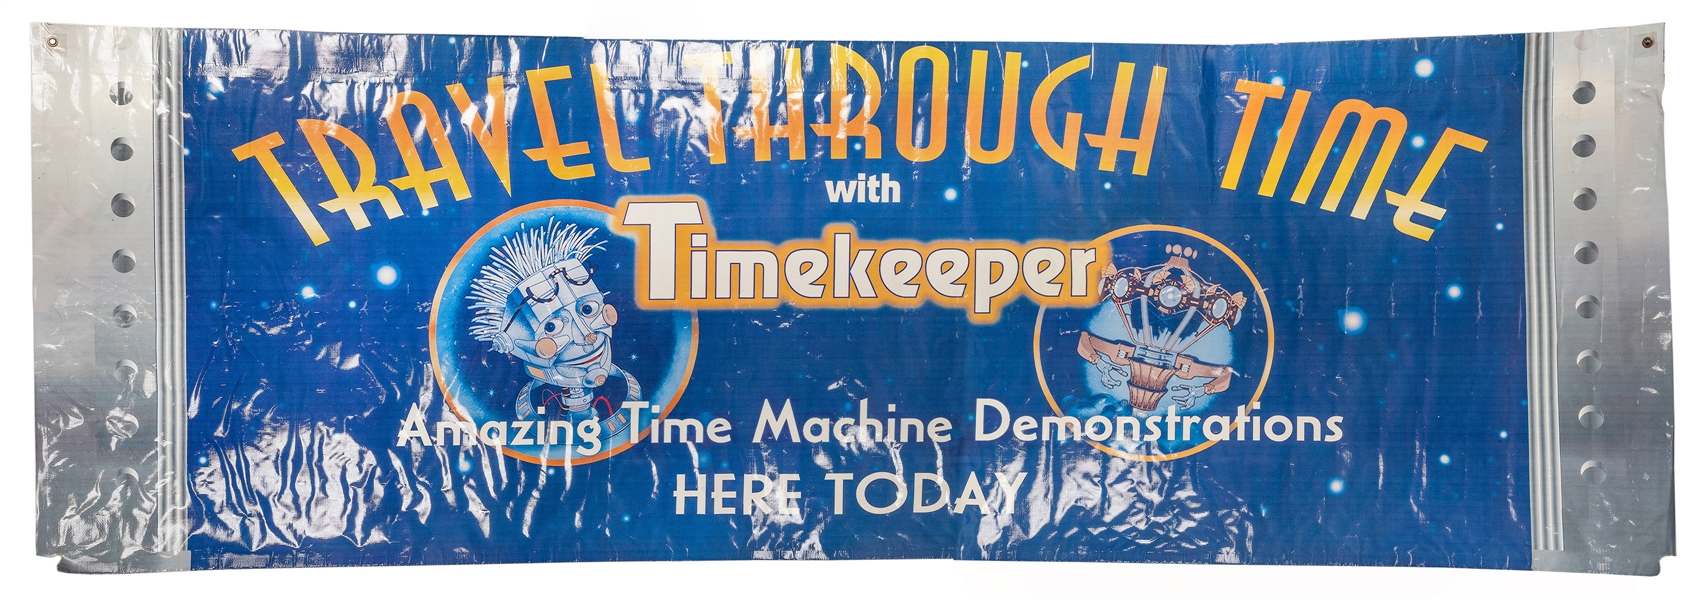 Timekeeper attraction gigantic vinyl sign/banner.